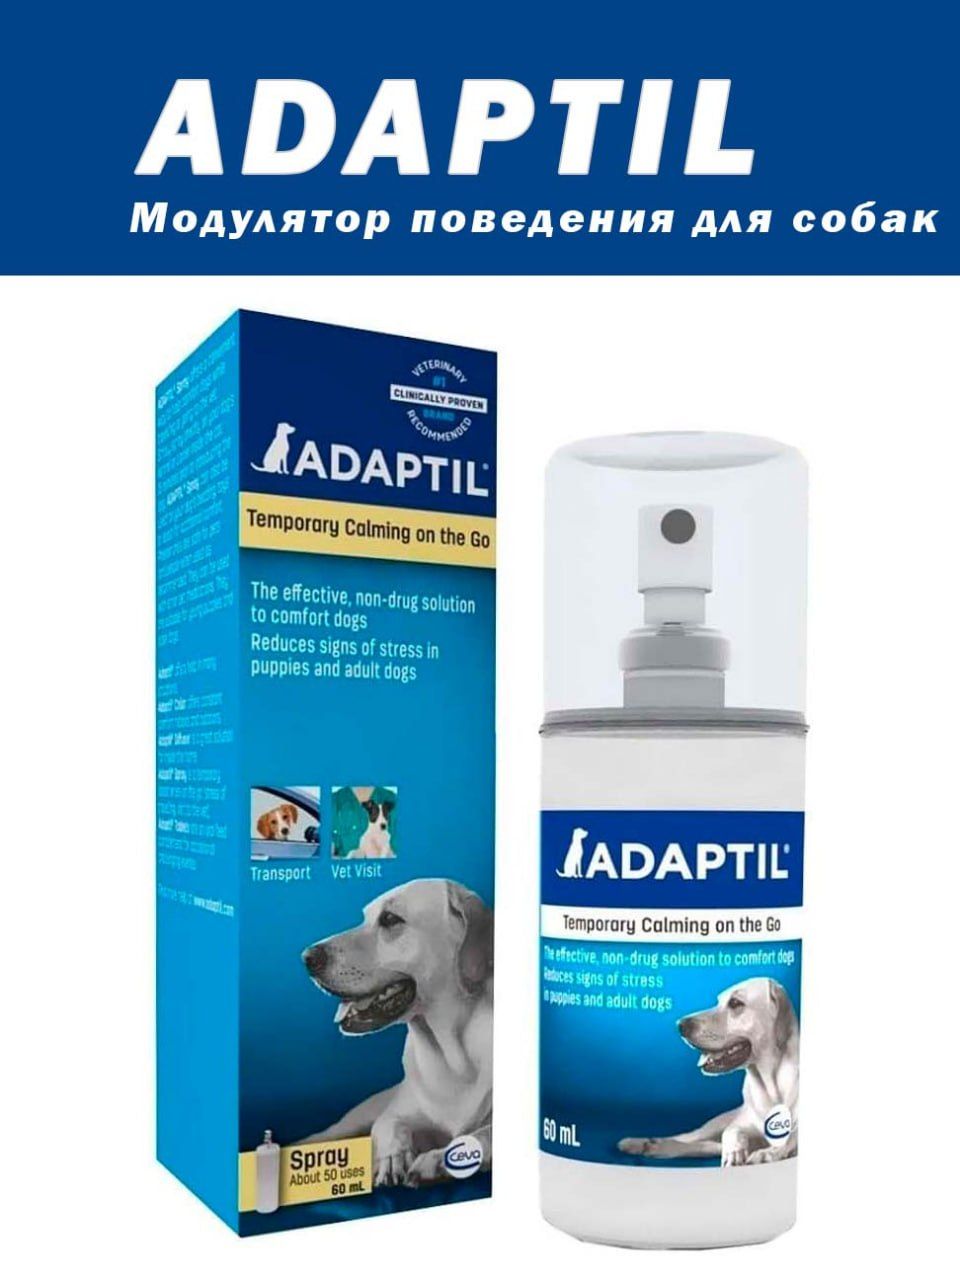 Таблетки для успокоения собак. Феромон для собак Adaptil (Адаптил). Адаптил спрей 60мл. Сева Адаптил для собак. Адаптил (ДАП) для собак спрей, 60 мл.